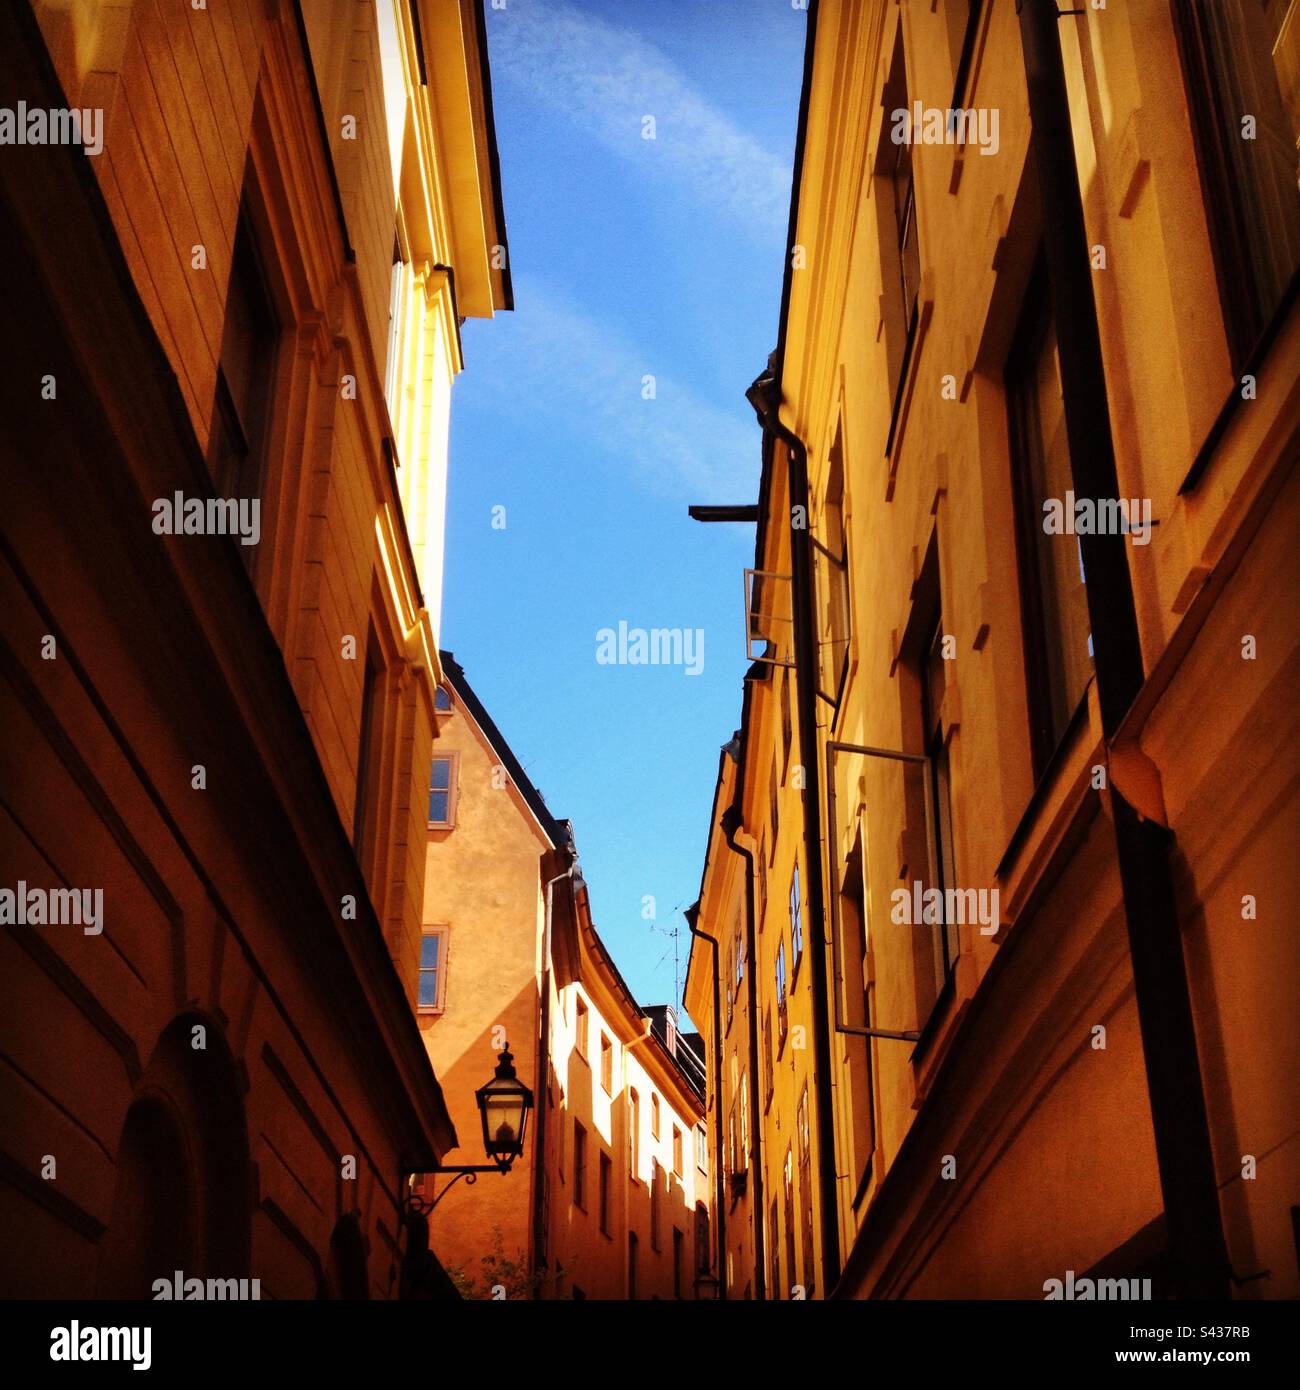 Gli esterni degli edifici tradizionali, dipinti in giallo e arancione, si affacciano sulle strette strade della città vecchia di Stoccolma, Gamla Stan, in Svezia Foto Stock